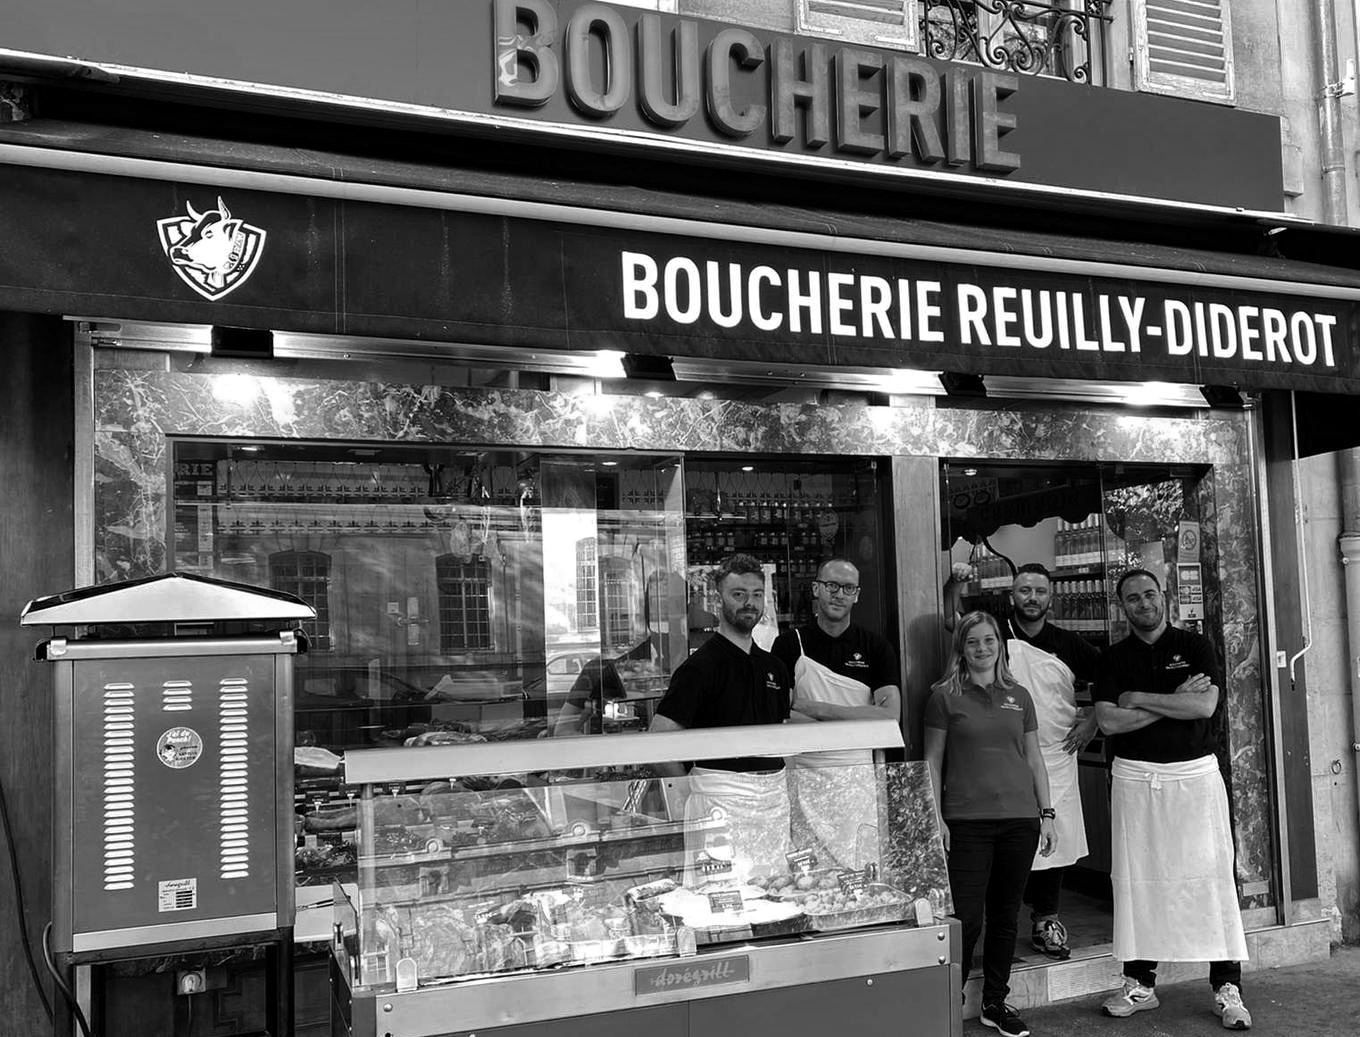 Boucherie Paris 12, Meilleure Boucherie Paris, Viande Qualité, Race Parthenaise, Boucherie de Quartier, Paris 12eme Arrondissement, Traiteur, Plats à emporter, Rotisserie, Fromages, Saucisses.